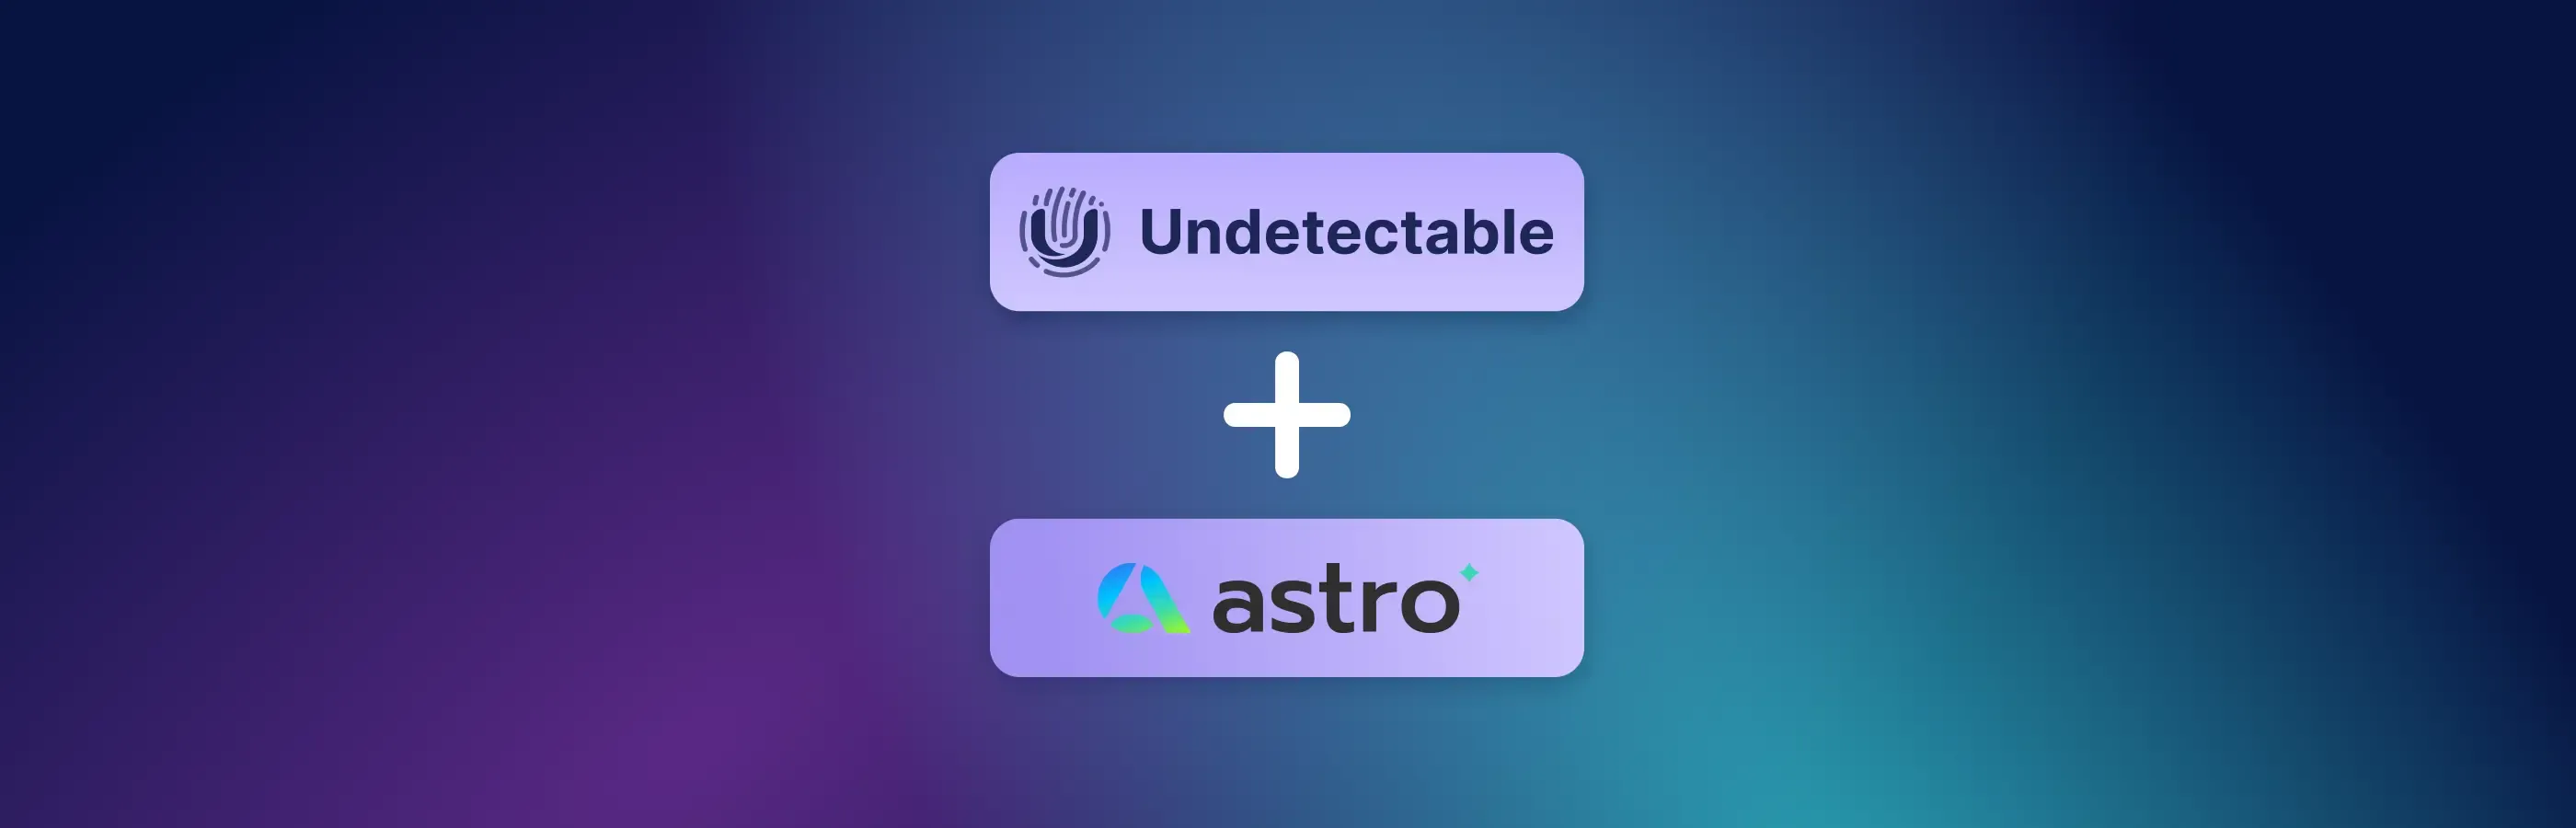 Как использовать Astro с Undetectable